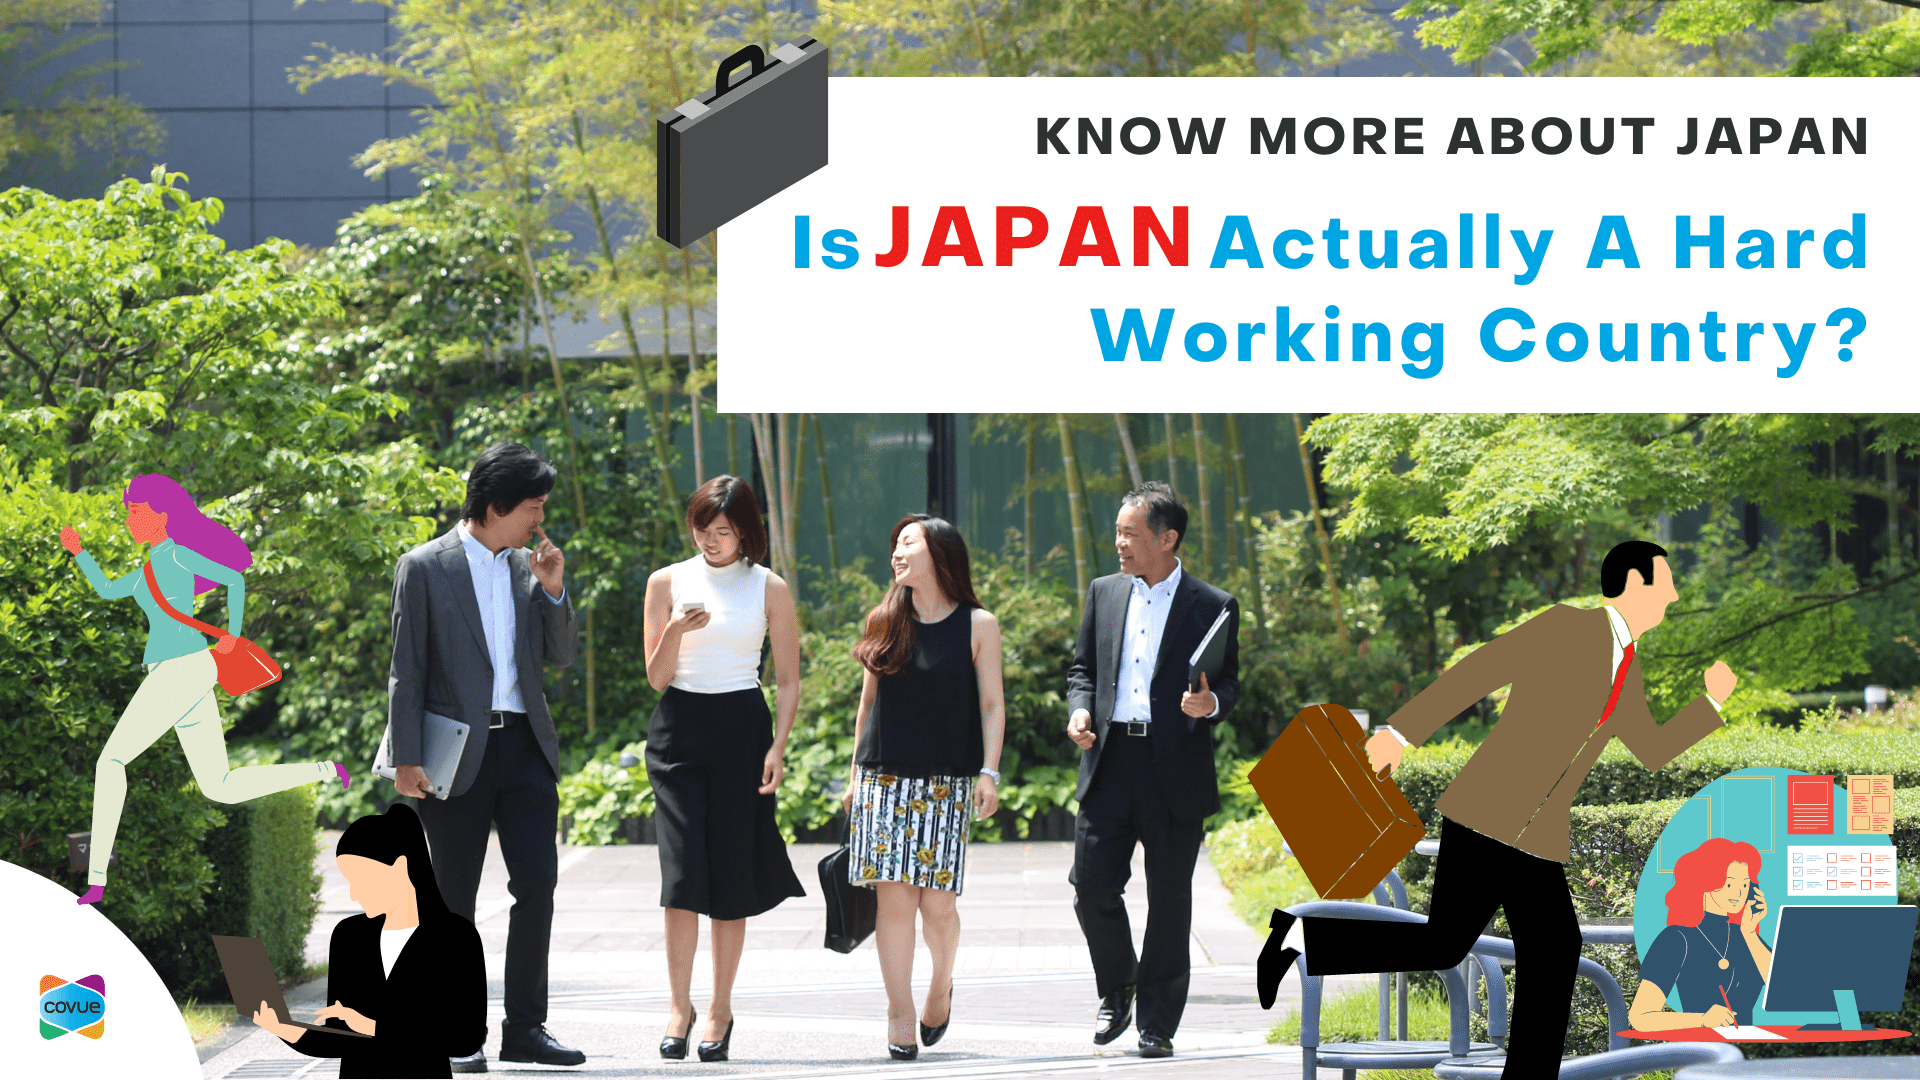 일본은 실제로 열심히 일하는 나라입니다.